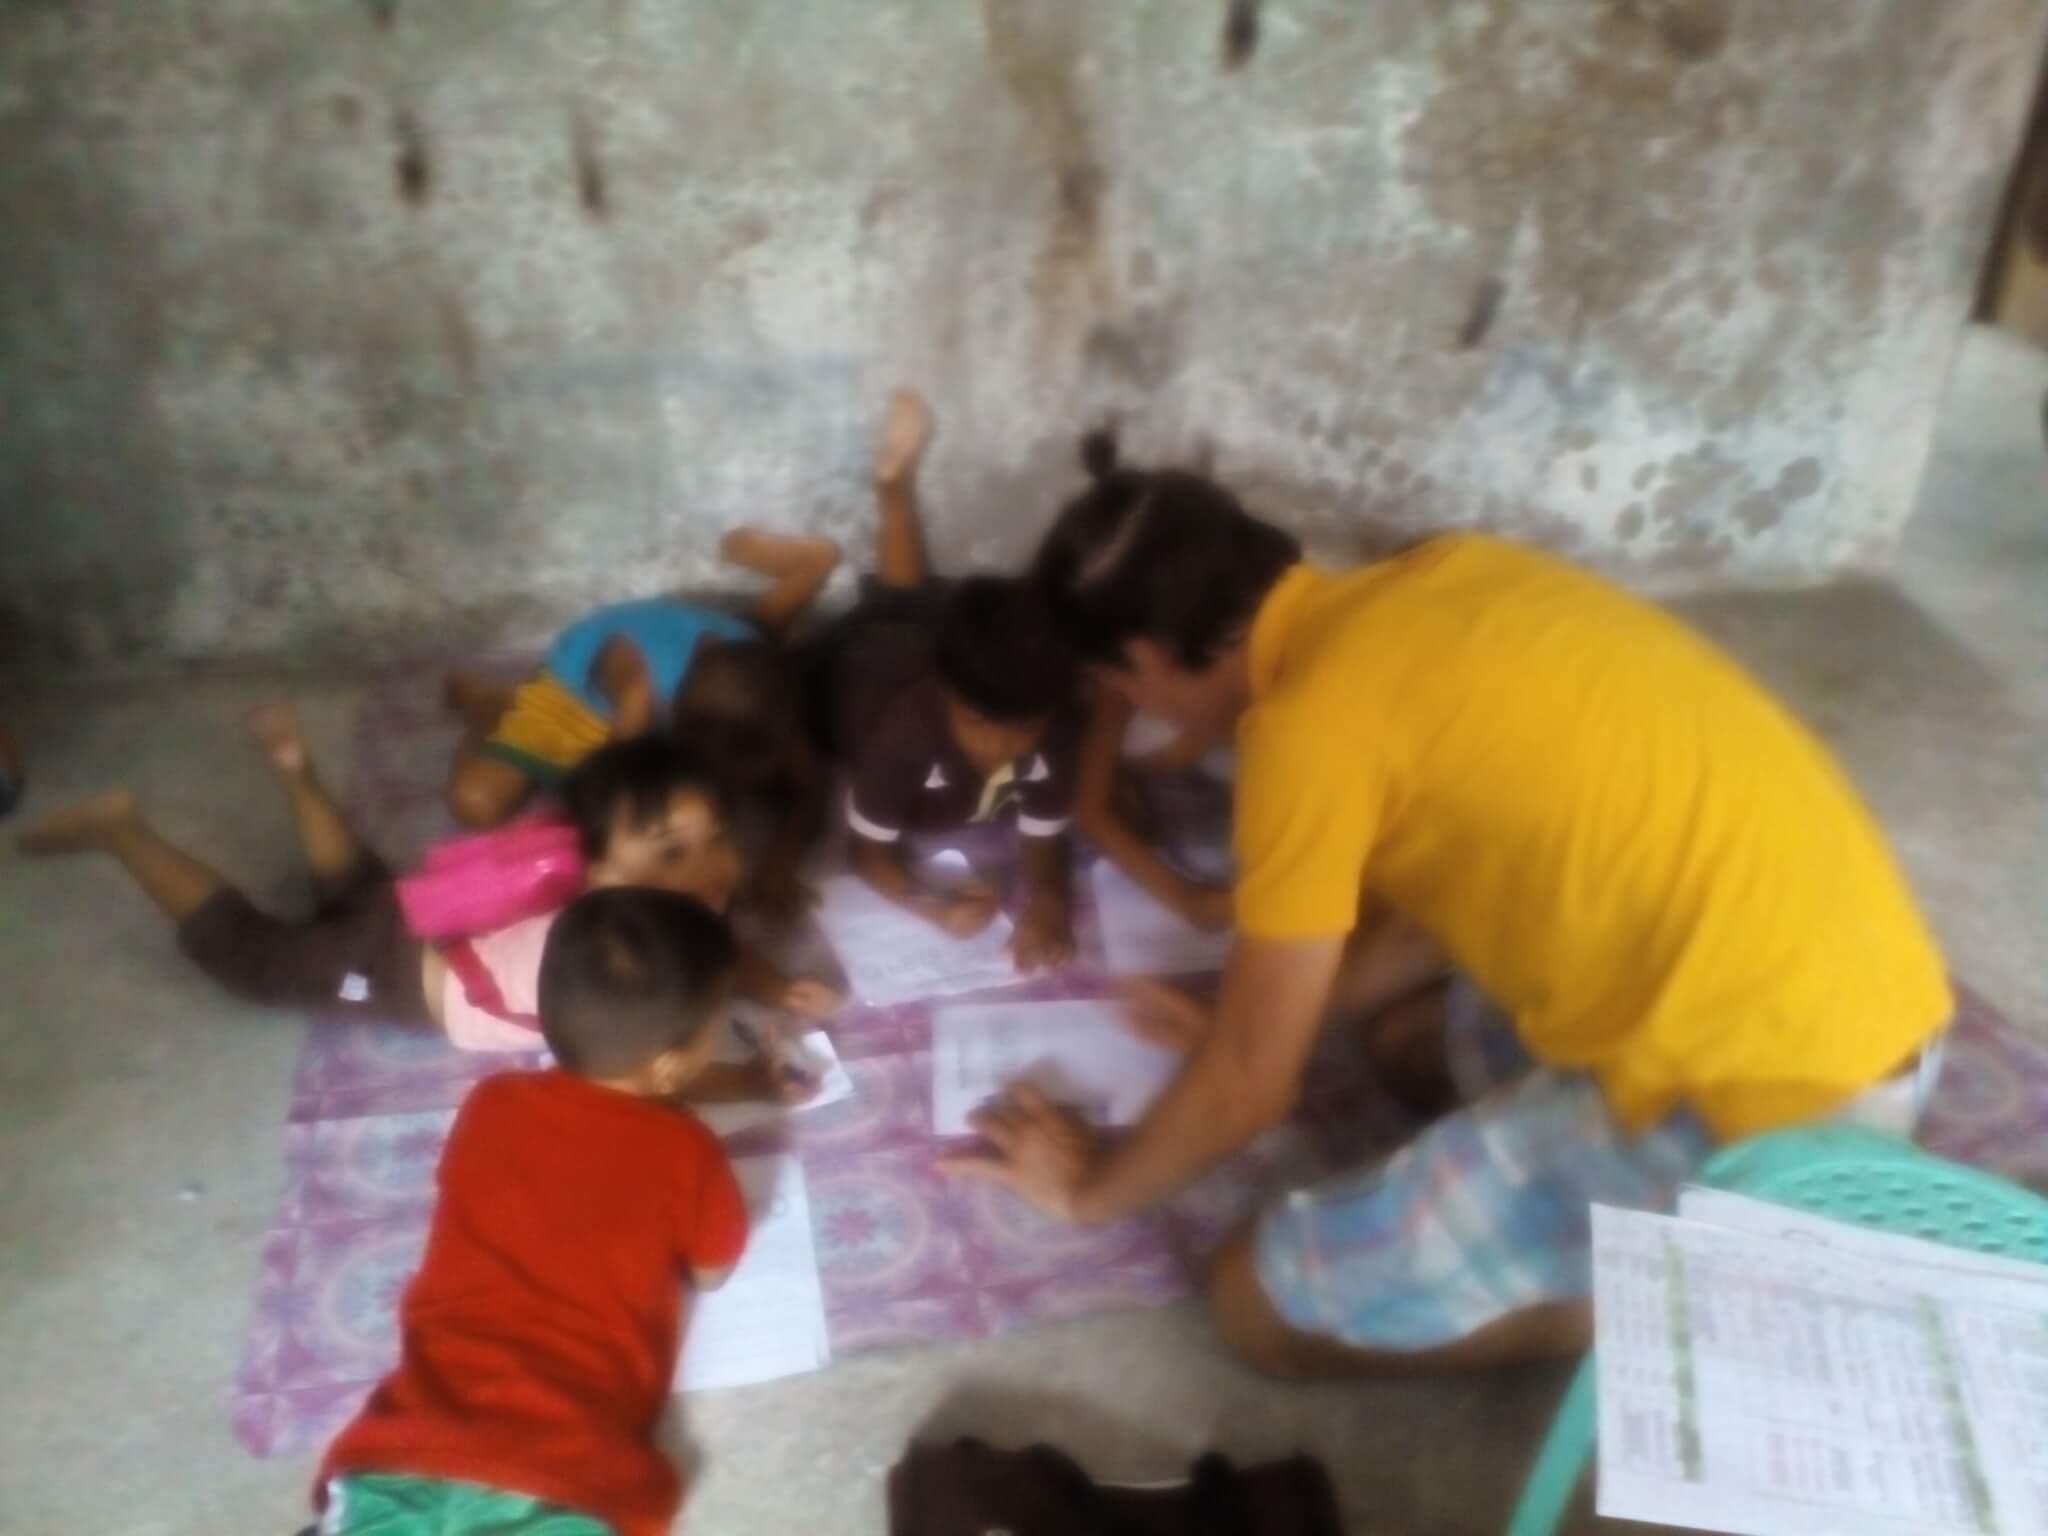 Bild: Kinder liegen am Boden und zeichnen